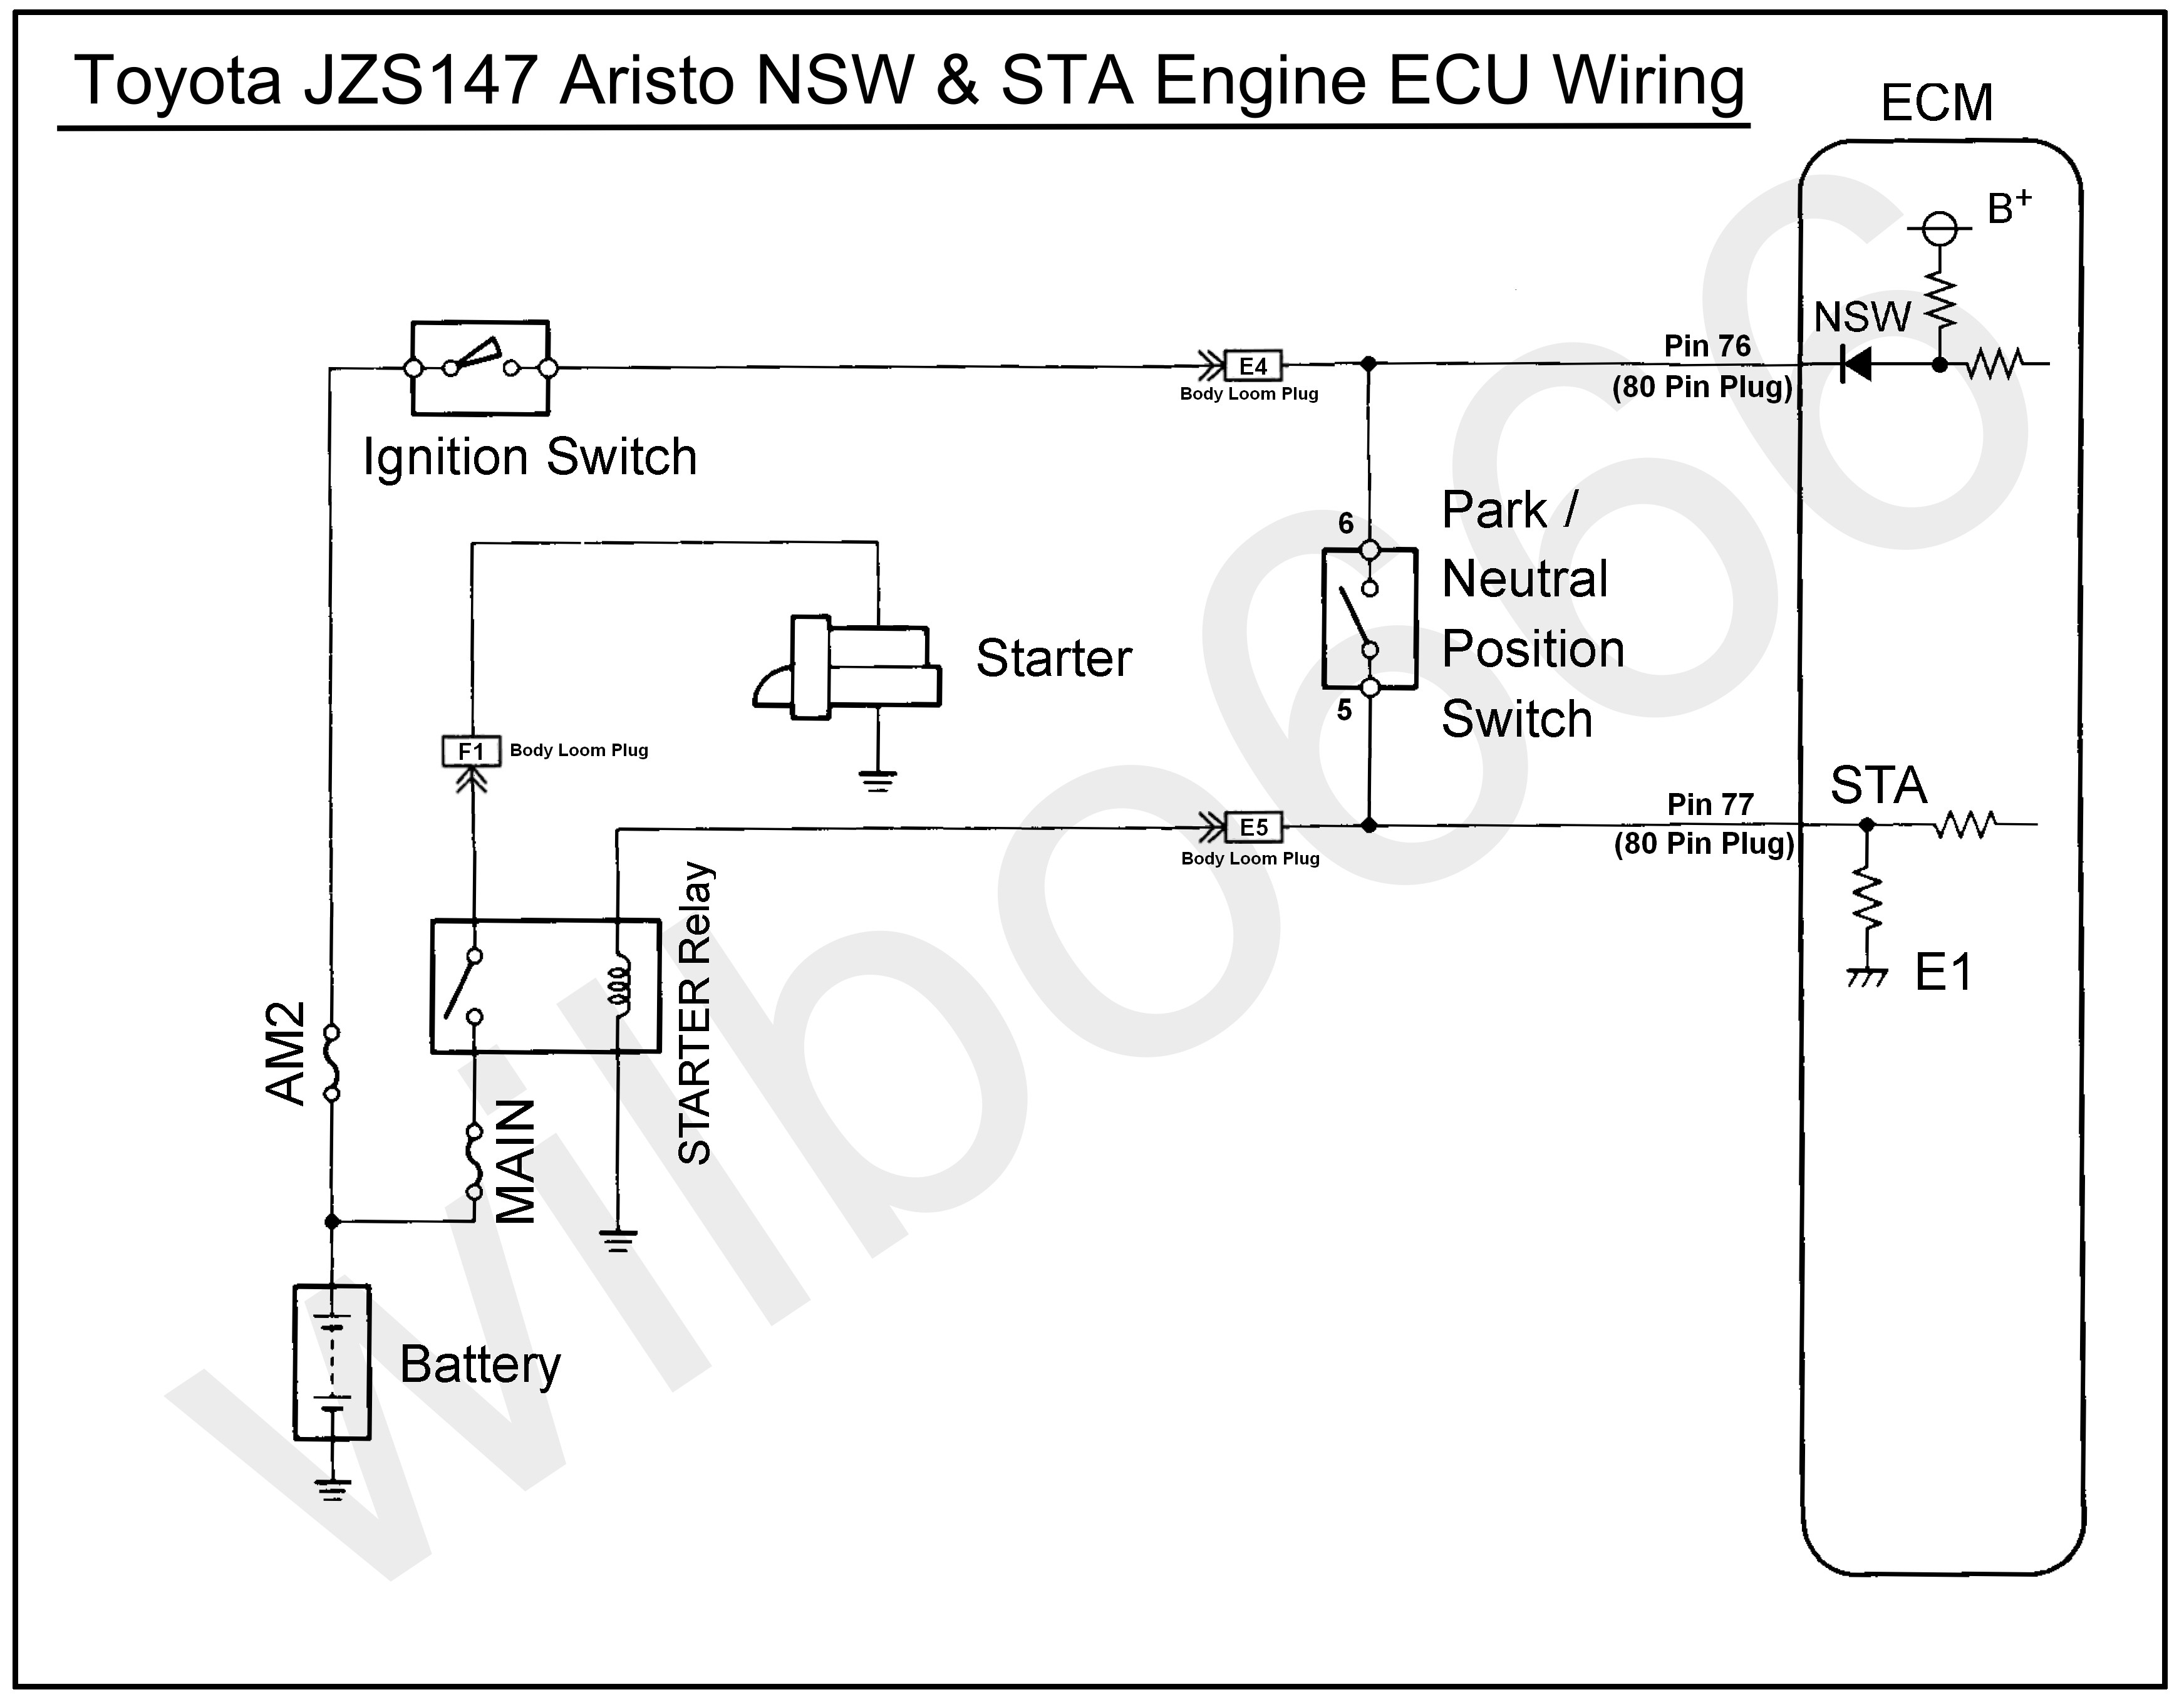 Engine Coolant Temperature Sensor Wiring Diagram Jzs147 toyota Aristo 2jz Gte Nsw & Sta Wiring